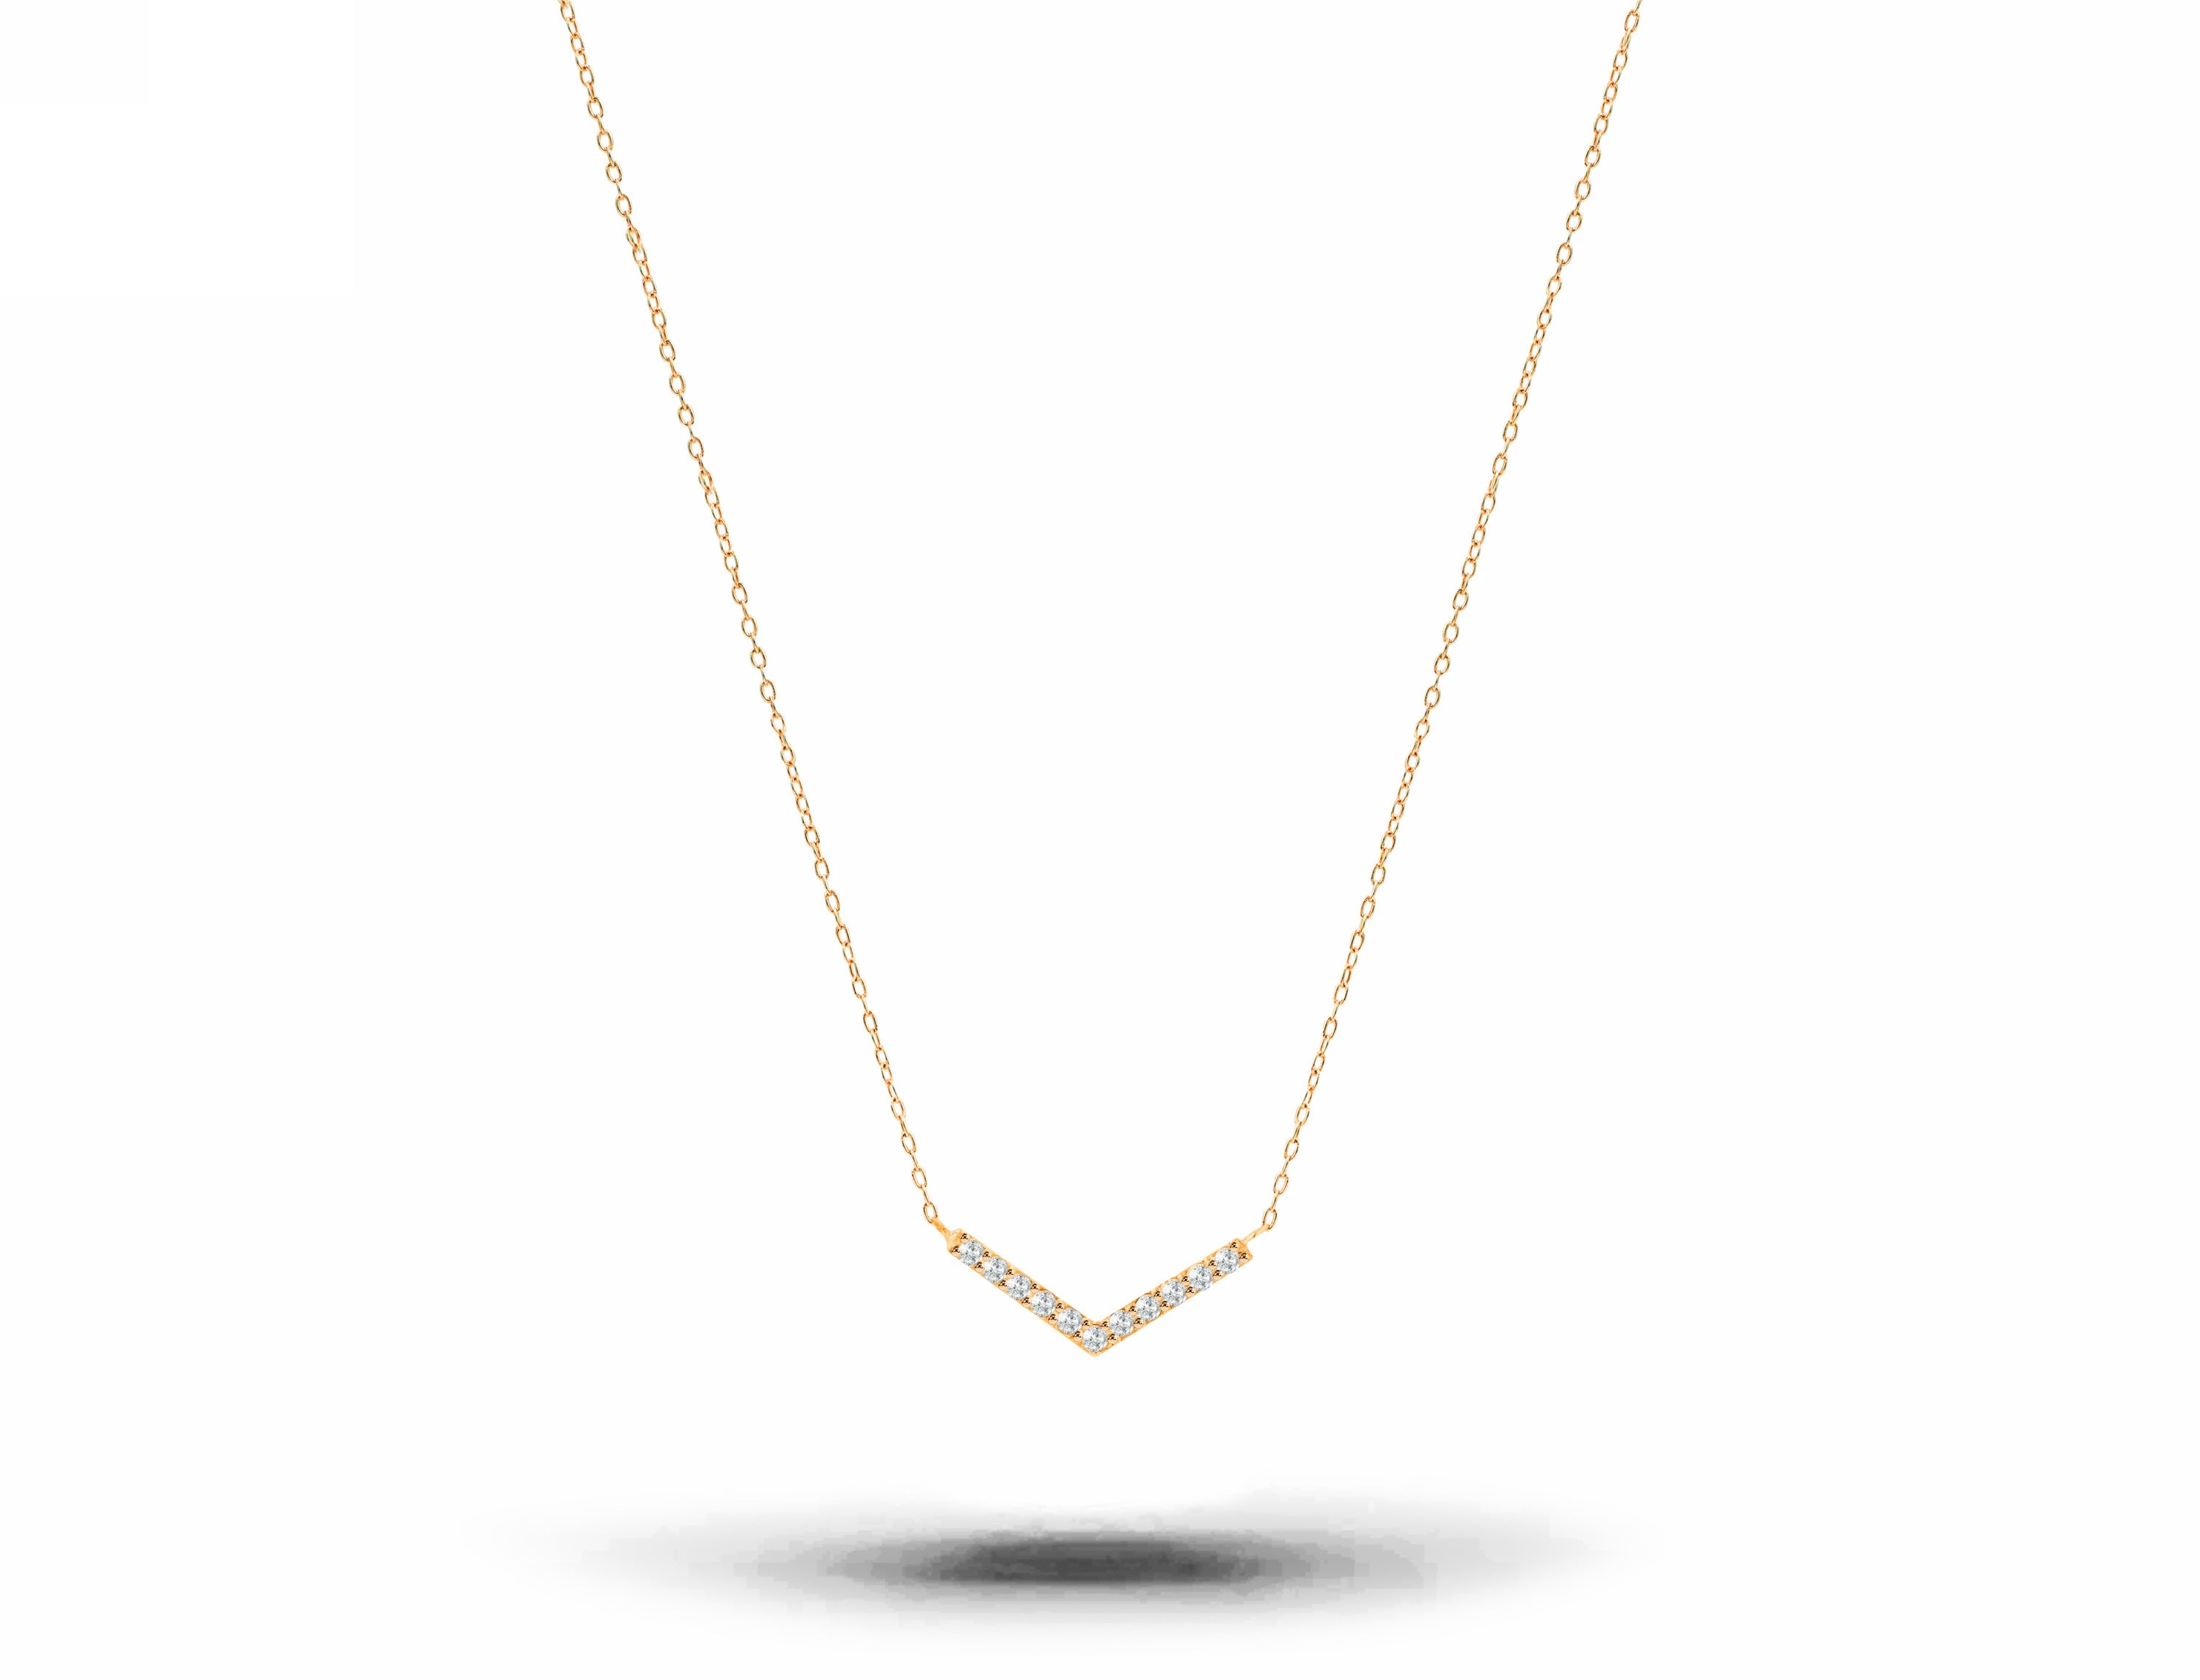 Collier en or 18 carats pavé de diamants « Dainty Pave », cadeau de Valentin moderne et minimaliste